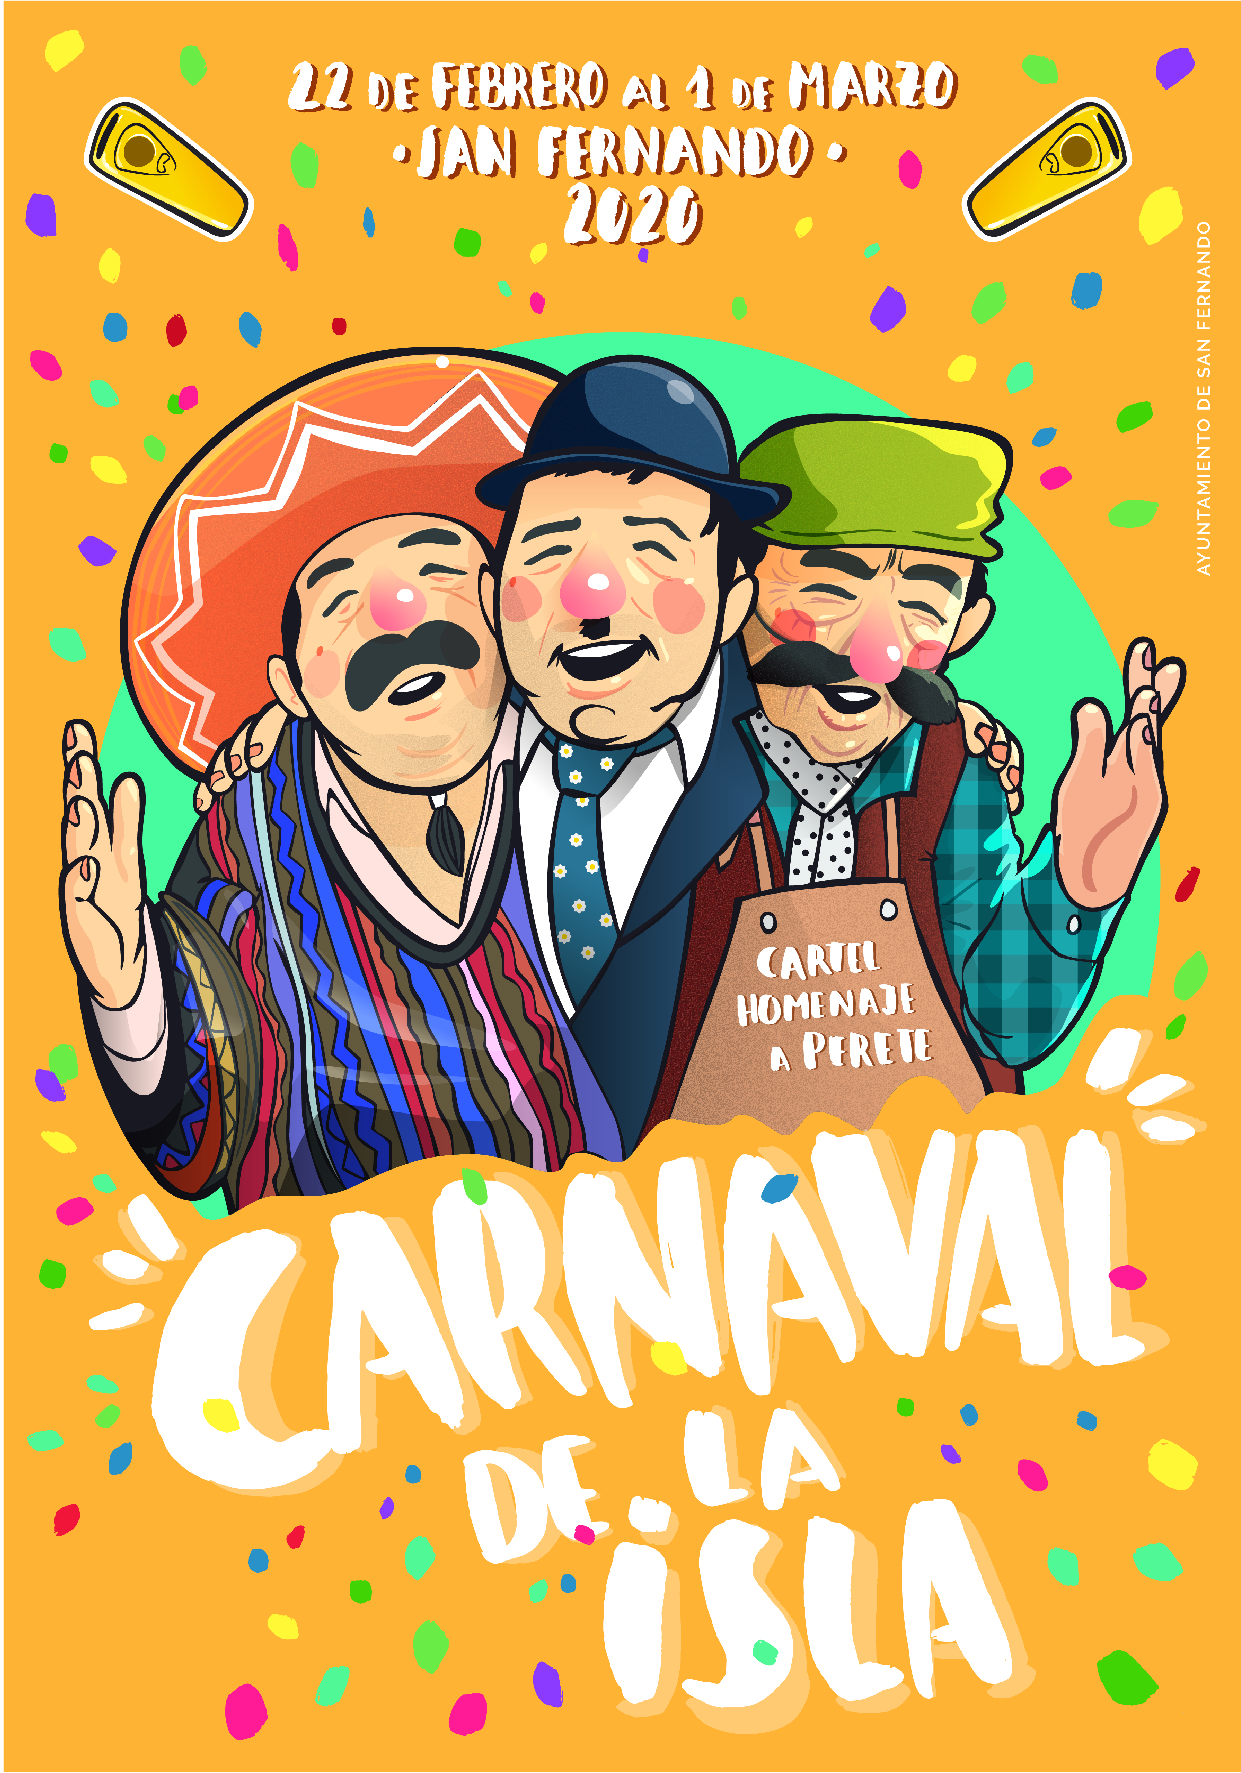 Programación del Carnaval de San Fernando 2020